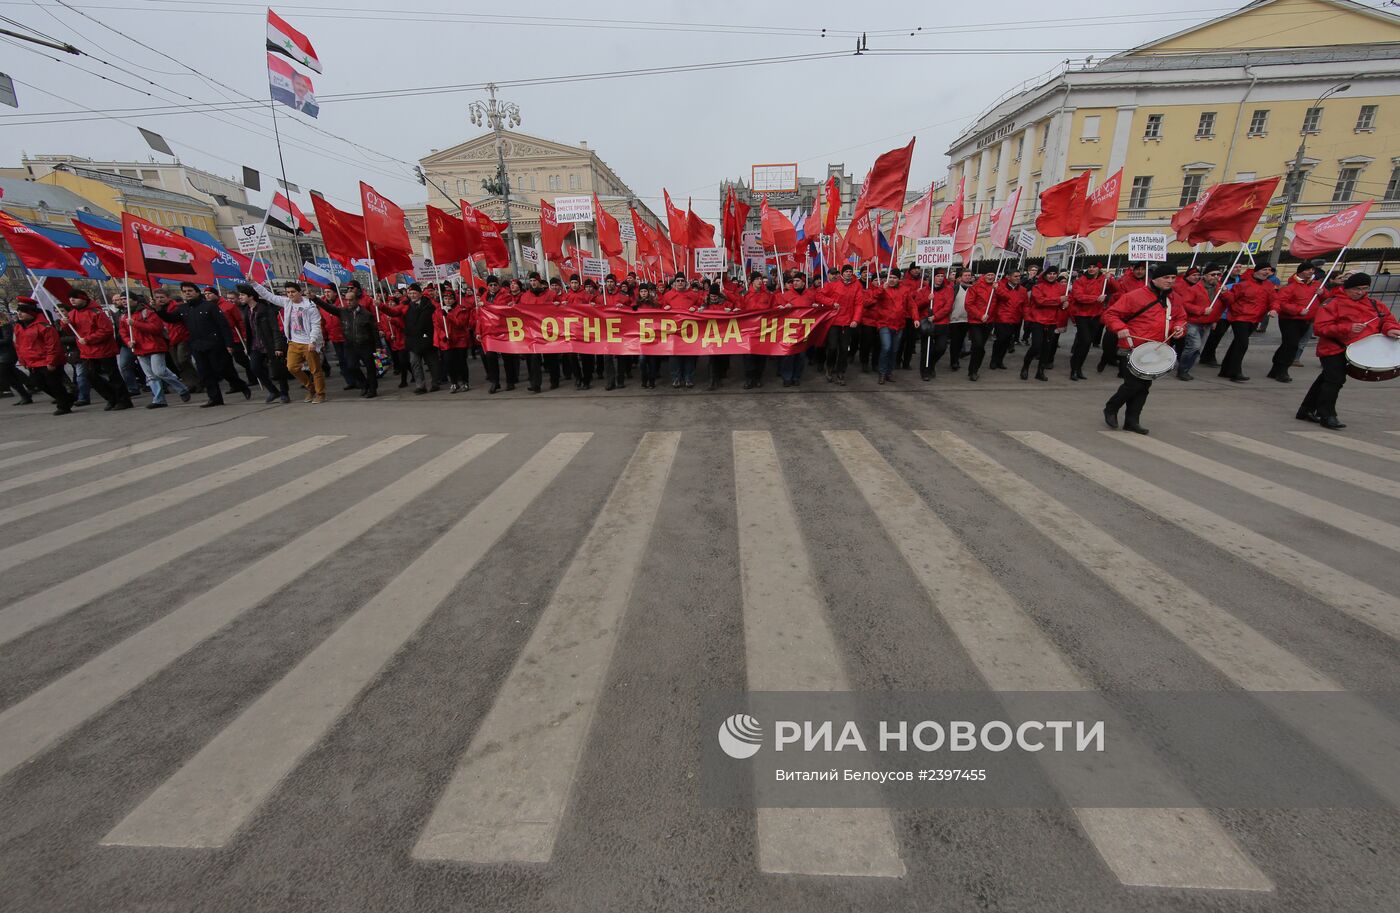 Акция "Марш братства и гражданского сопротивления" в Москве